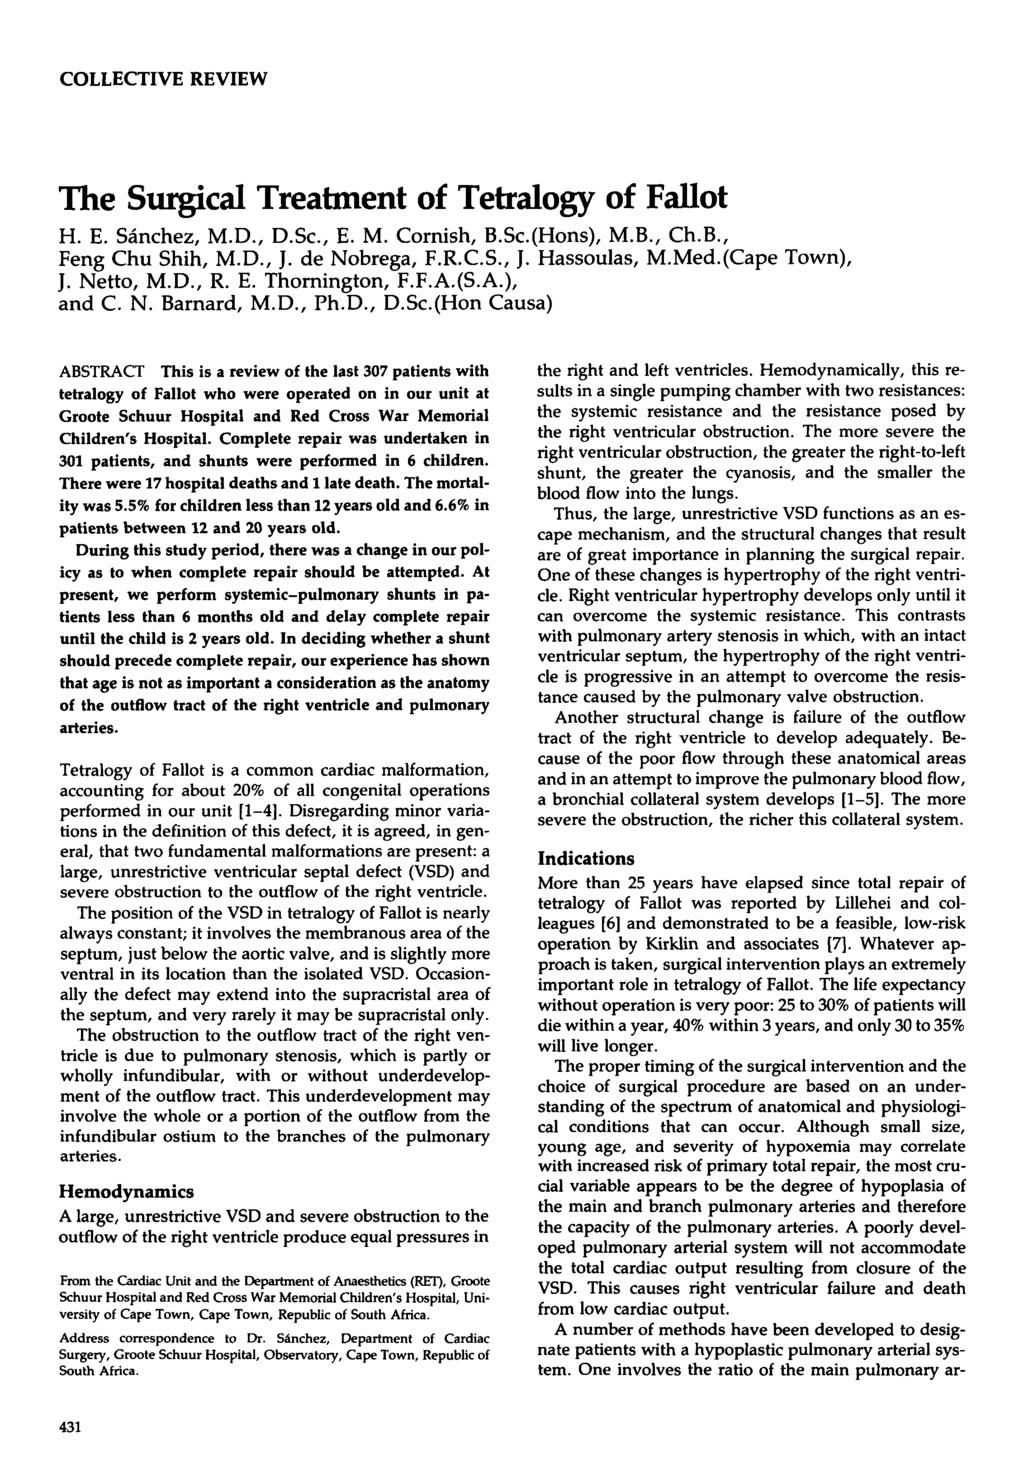 COLLECTIVE REVIEW The Surgical Treatment of Tetralogy of Fallot H. E. Sinchez, M.D., D.Sc., E. M. Cornish, B.Sc.(Hons), M.B., Ch.B., Feng Chu Shih, M.D., J. de Nobrega, F.R.C.S., J. Hassoulas, M.Med.